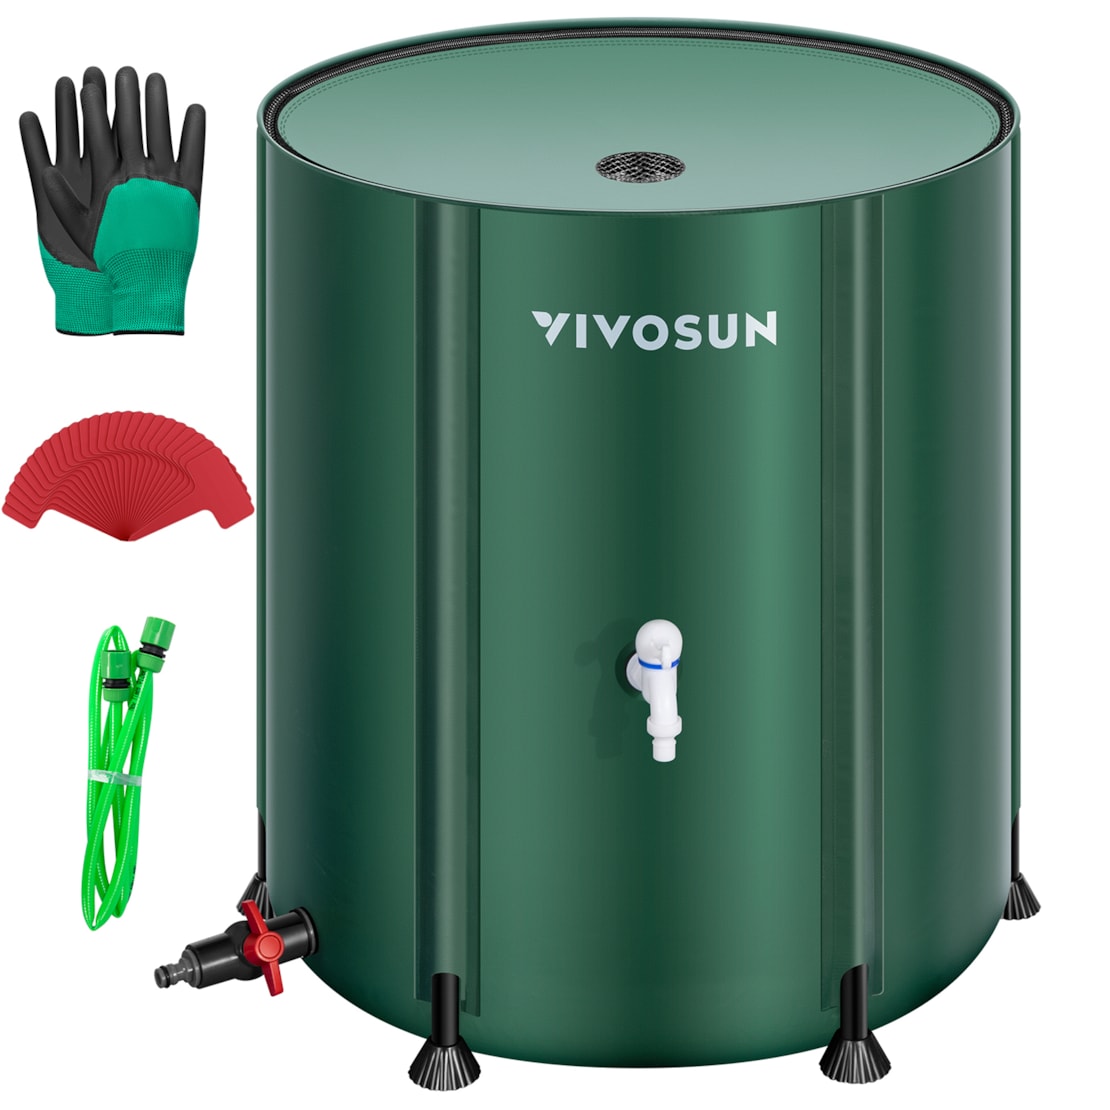 VIVOSUN Collapsible Rain Barrel, 53 Gallon with 1000D Oxford Cloth, Portable Rain Collection System, Water Barrel Collector w/Filter Spigot, Green